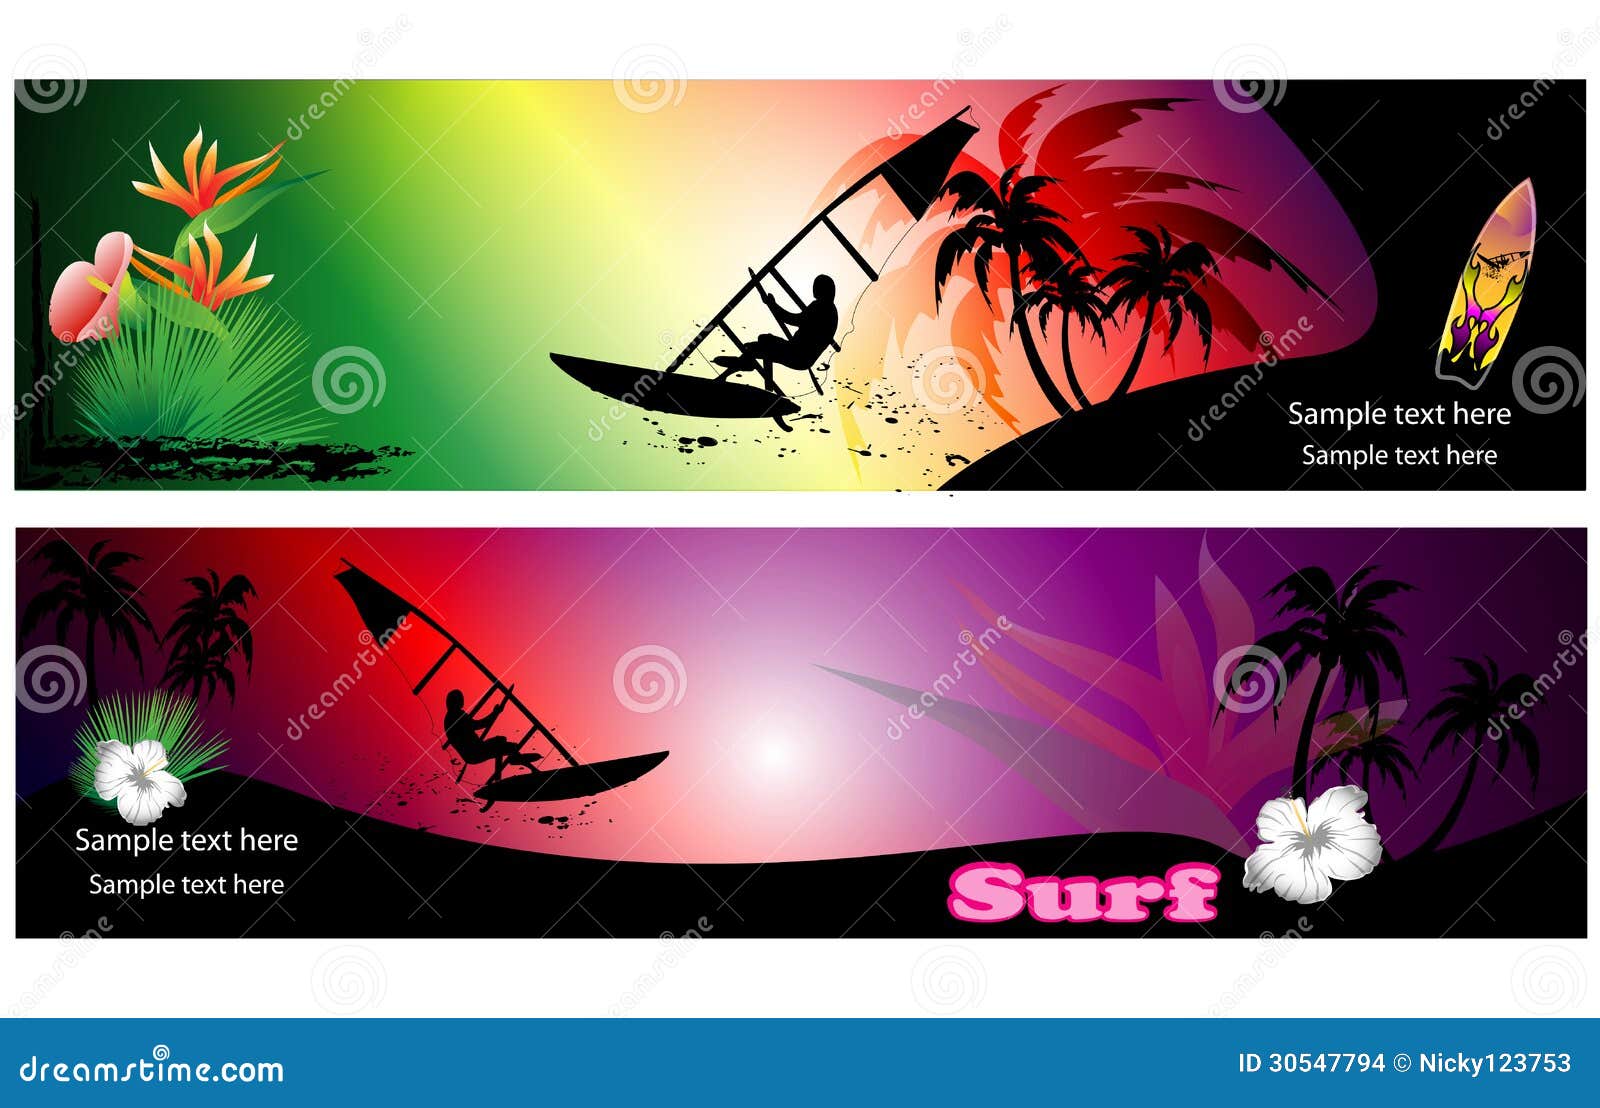 surf background